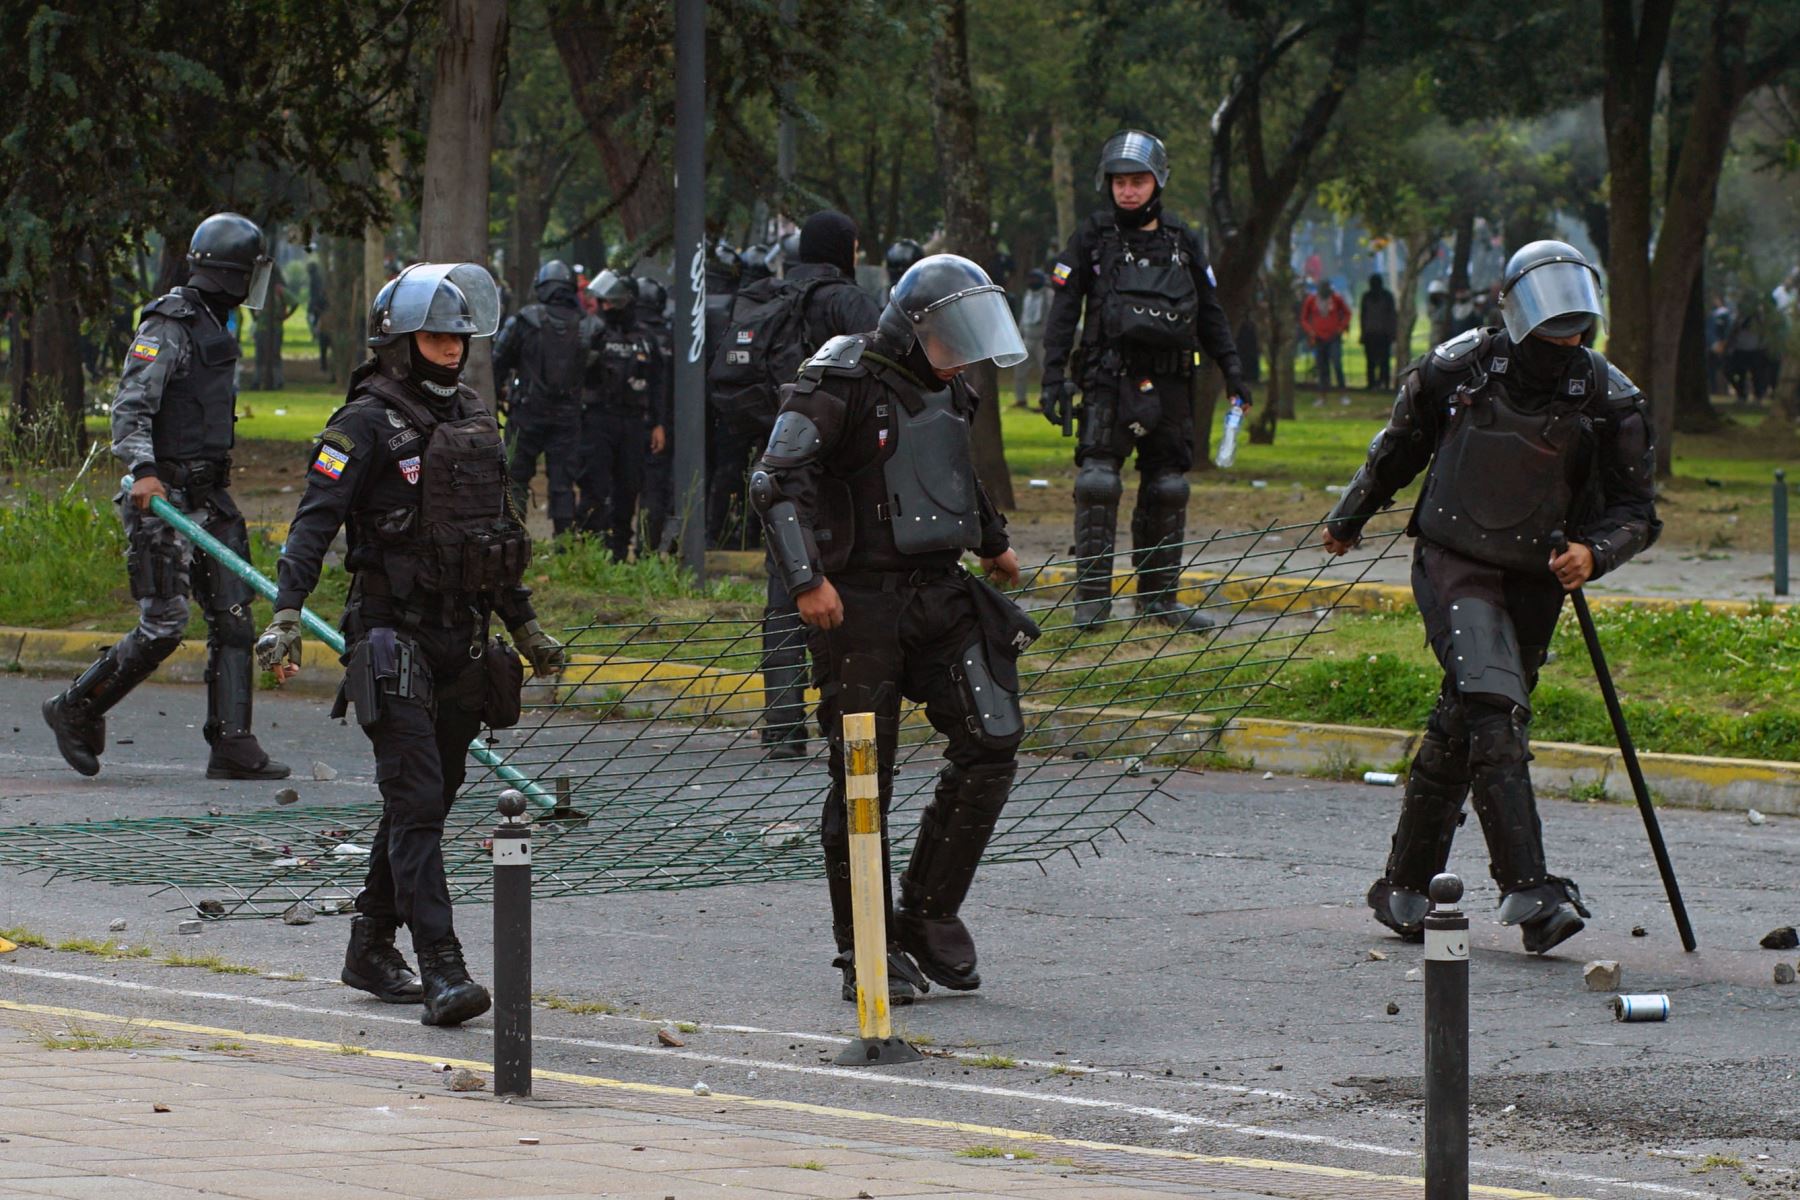 La policía antidisturbios ecuatoriana se hace presente en la manifestación, mientras se enfrenta a los protestantes cerca de la Casa de la Cultura Ecuatoriana en Quito.
Foto: AFP